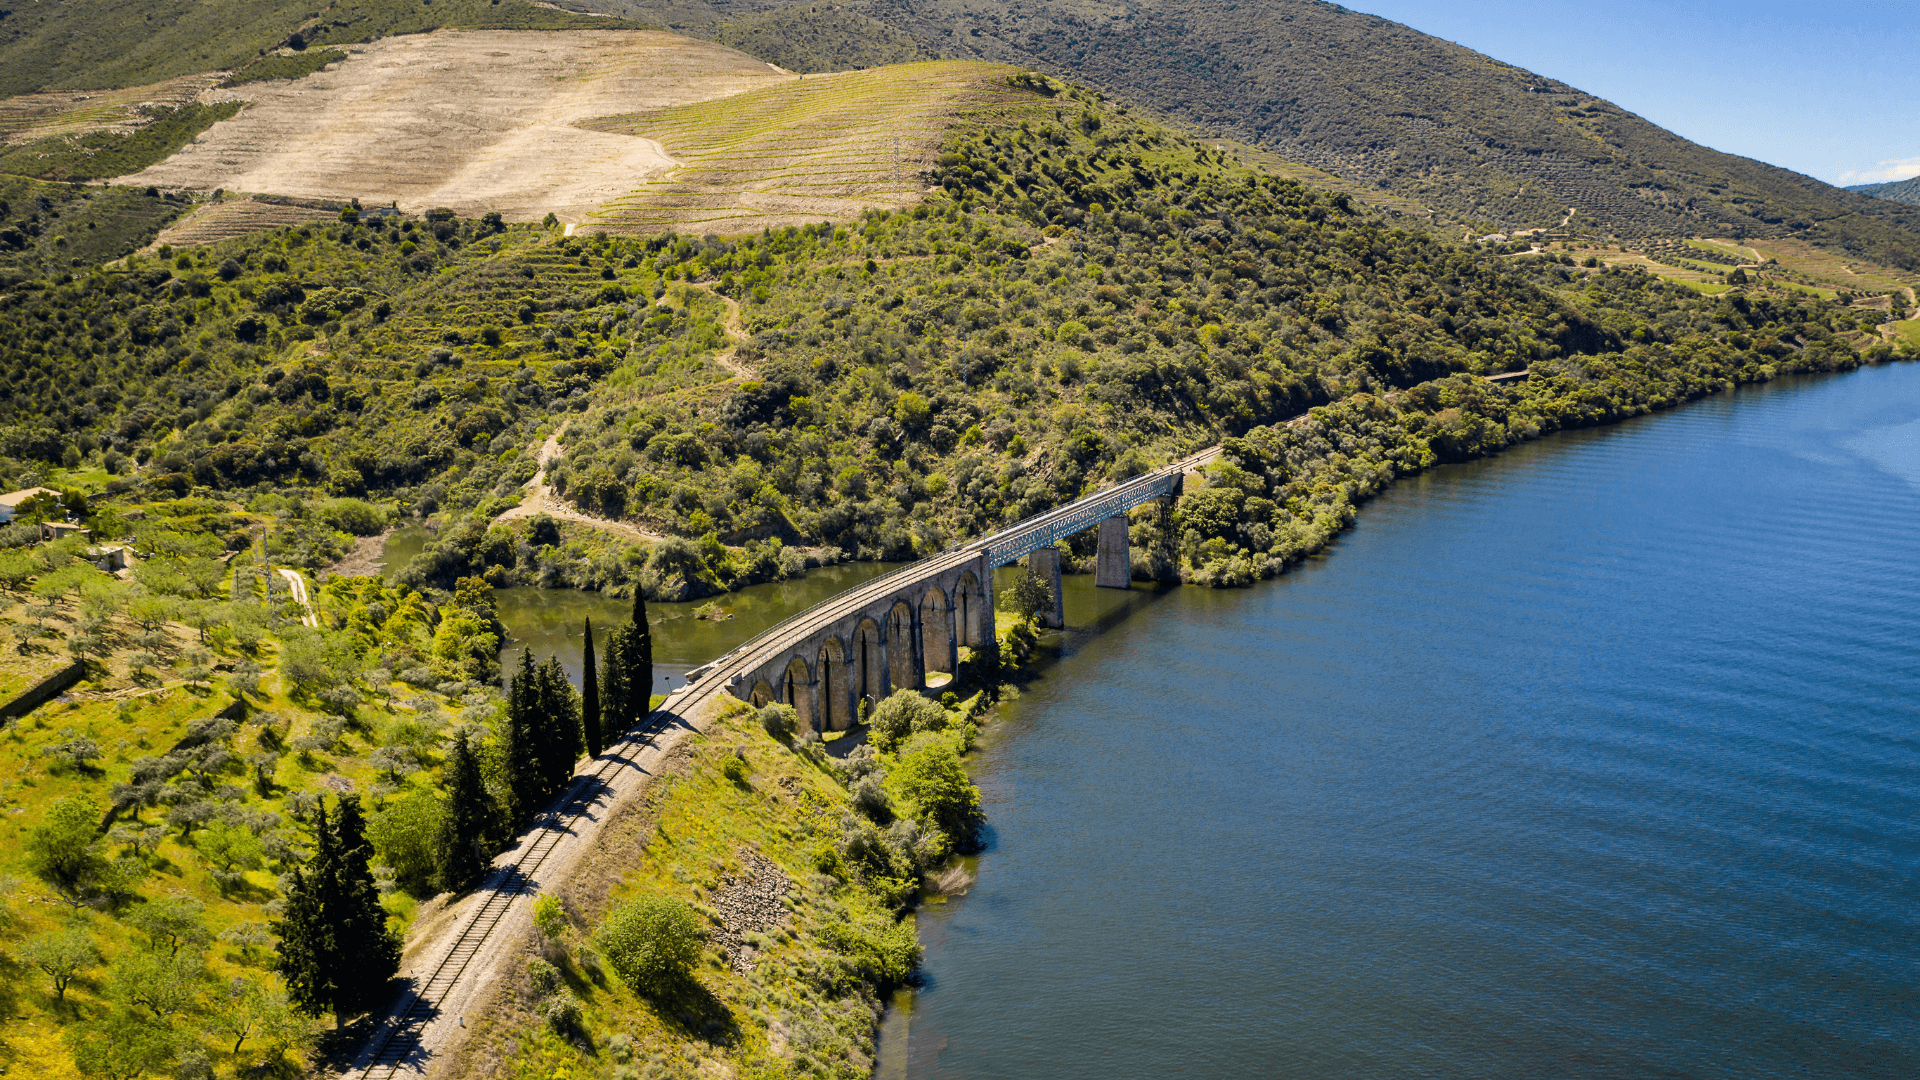 Douro Valley railway line